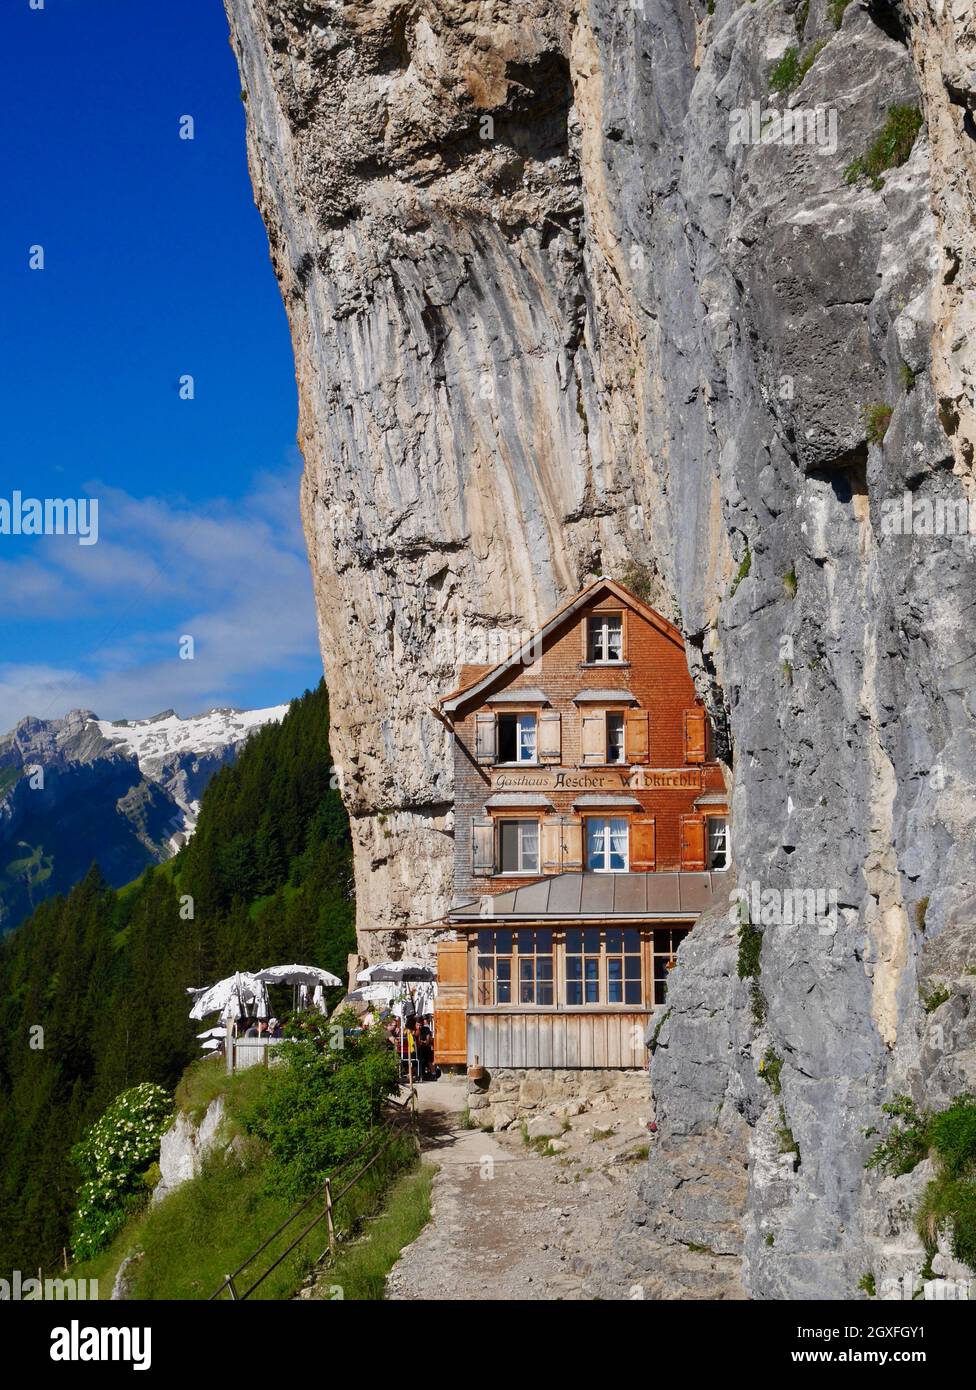 Aescher, l'iconico ristorante montano sospeso sulla scogliera della Svizzera, il luogo più bello al mondo, ad Alpstein. Foto Stock